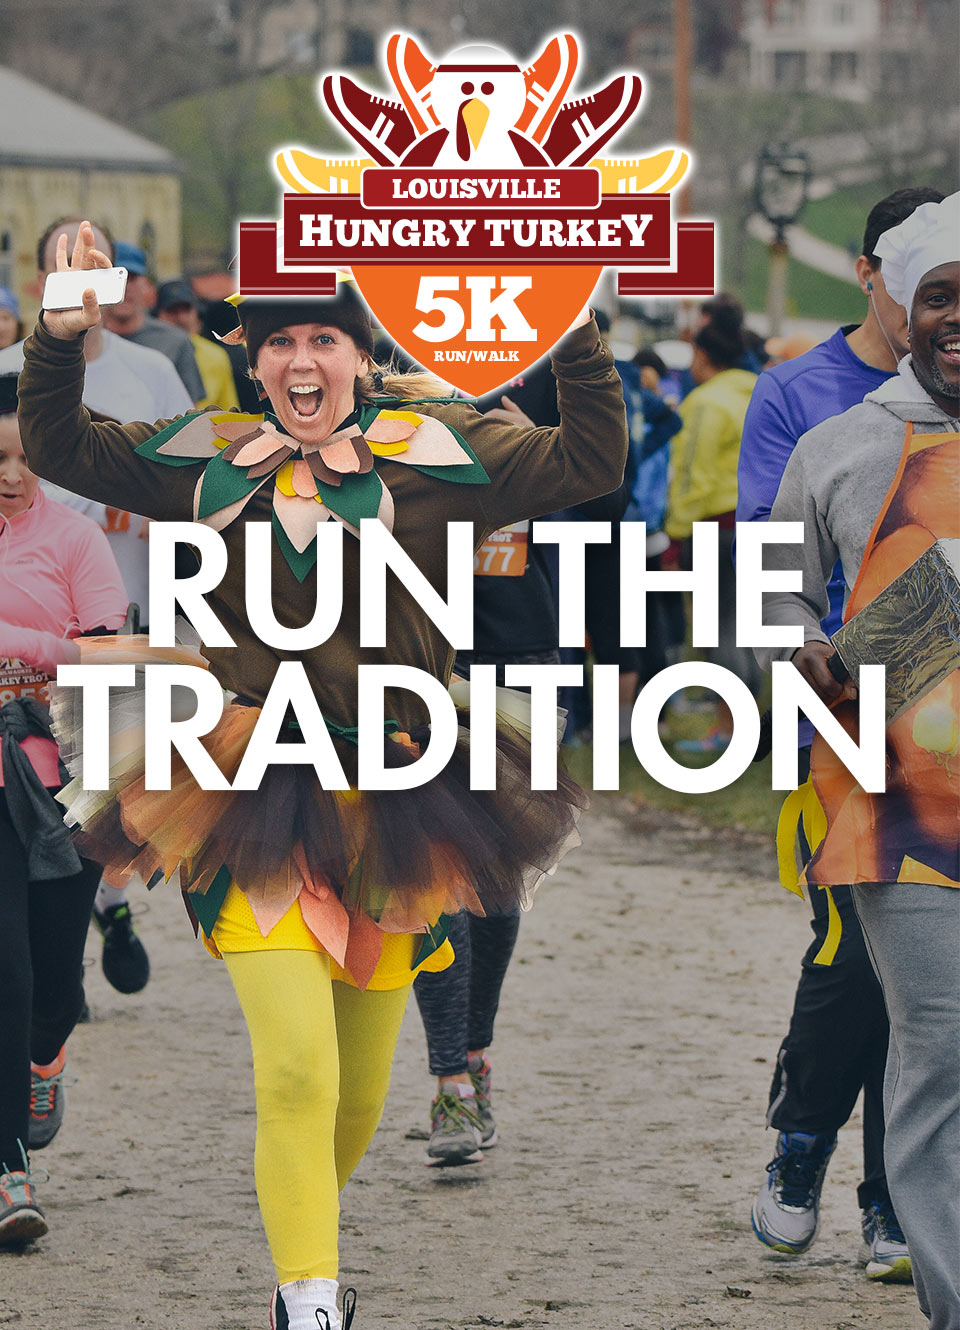 Louisville Hungry Turkey Run